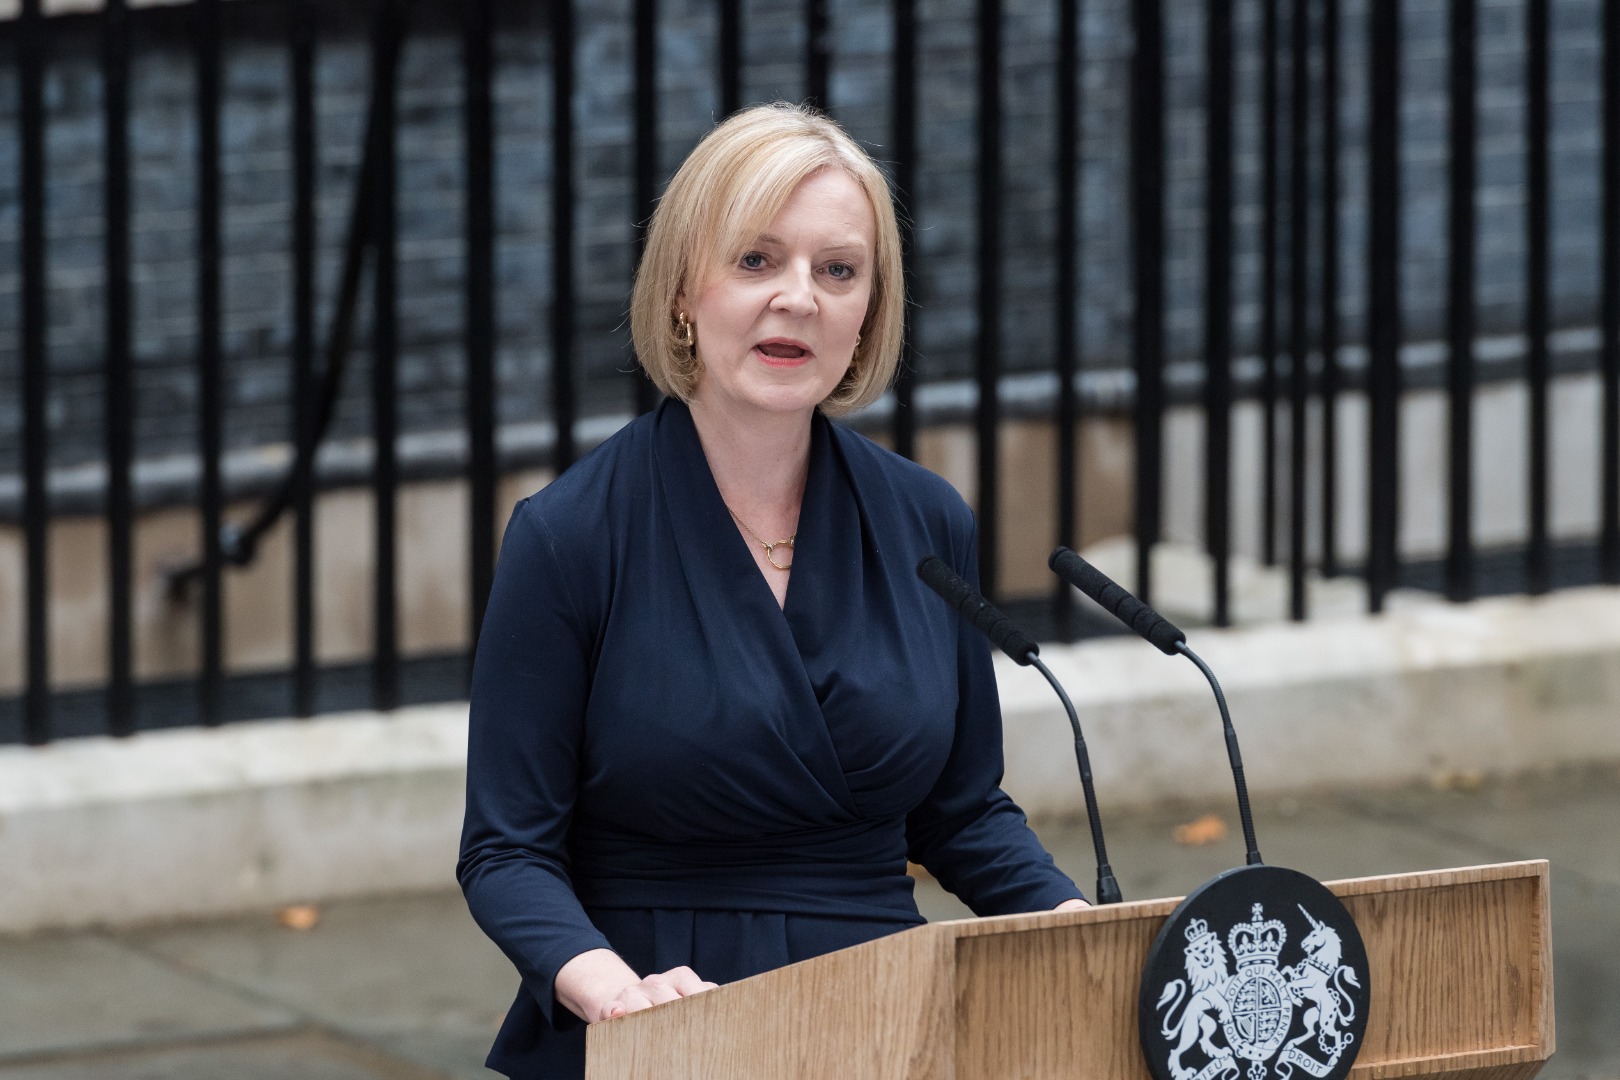 İngiltere'nin yeni Başbakanı Liz Truss ilk ulusa sesleniş konuşmasını yaptı: 3 önceliğim var